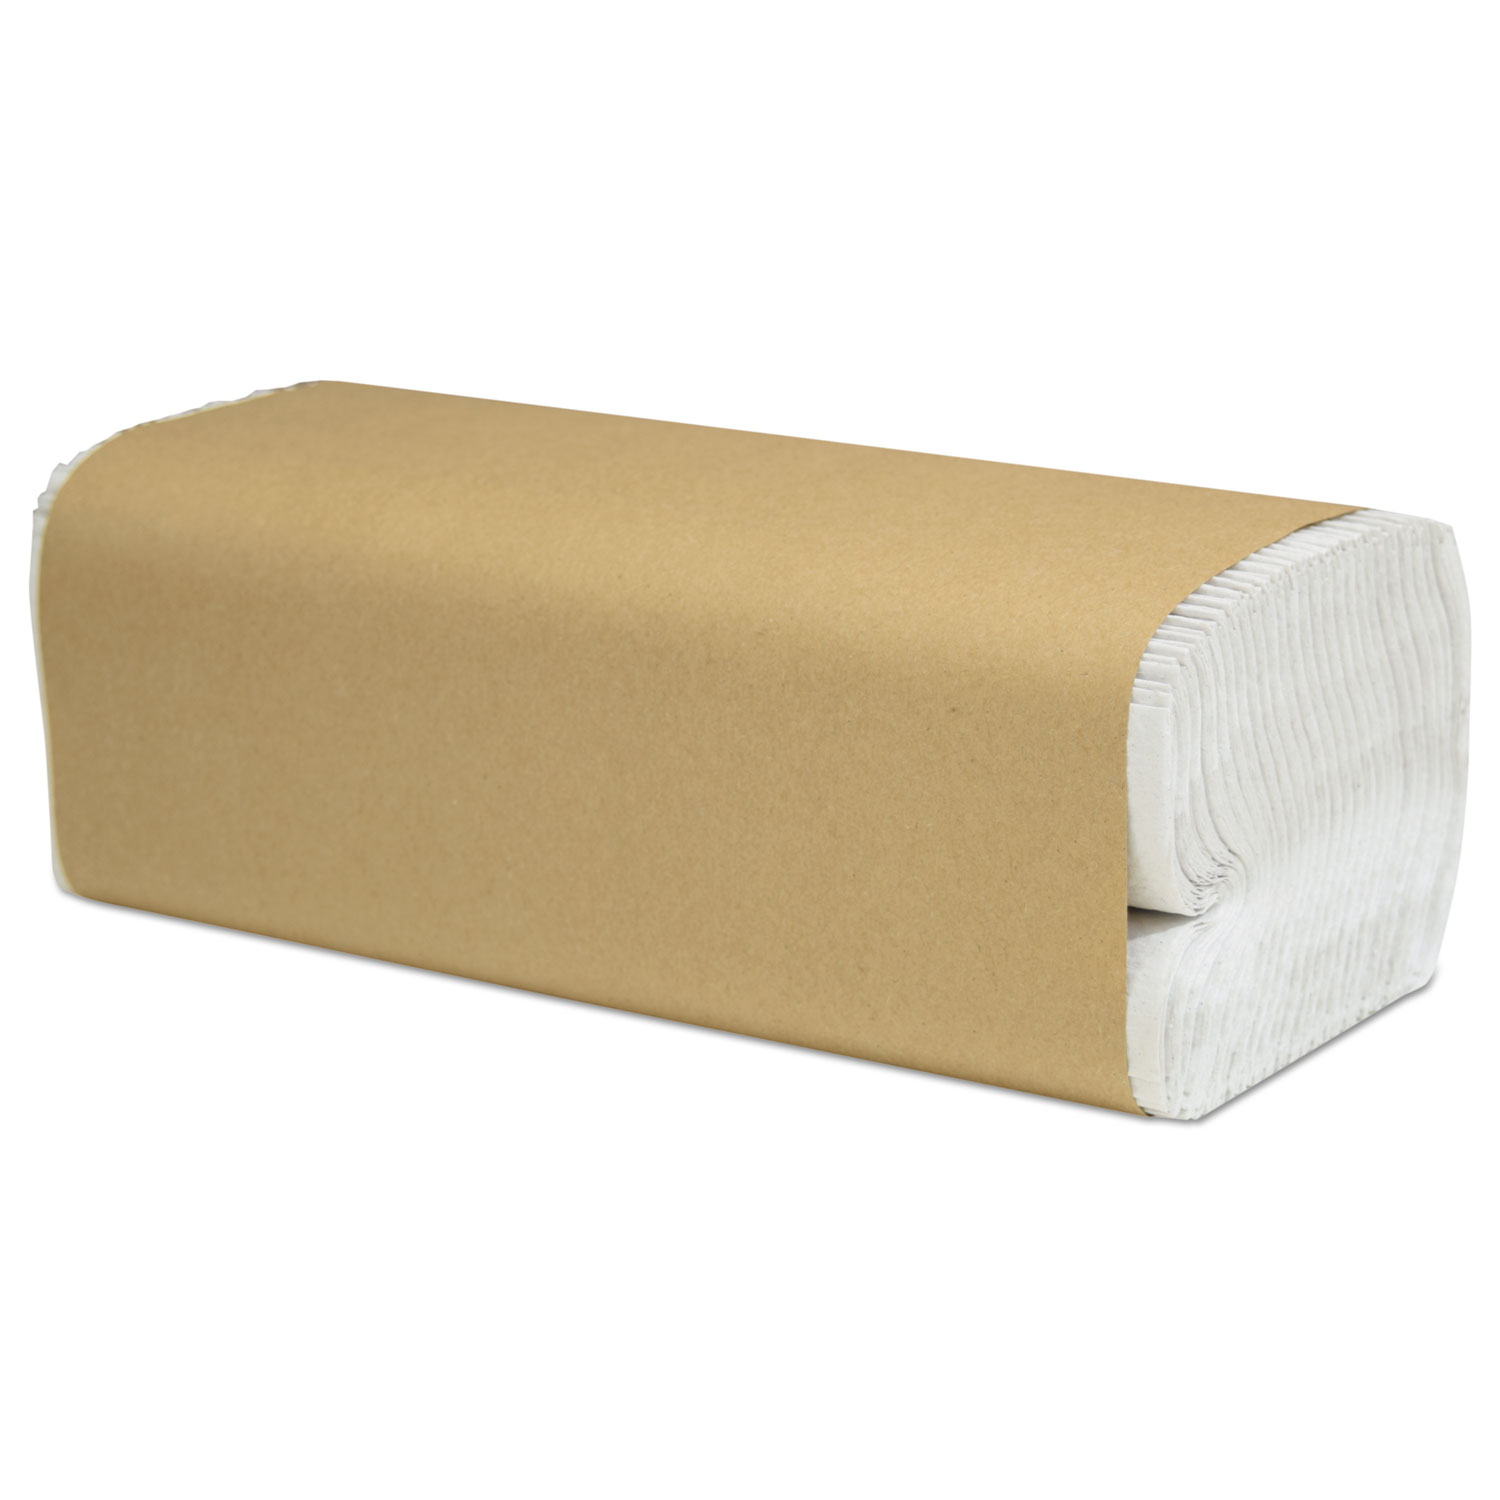 1 Pure White Tissue Kraft